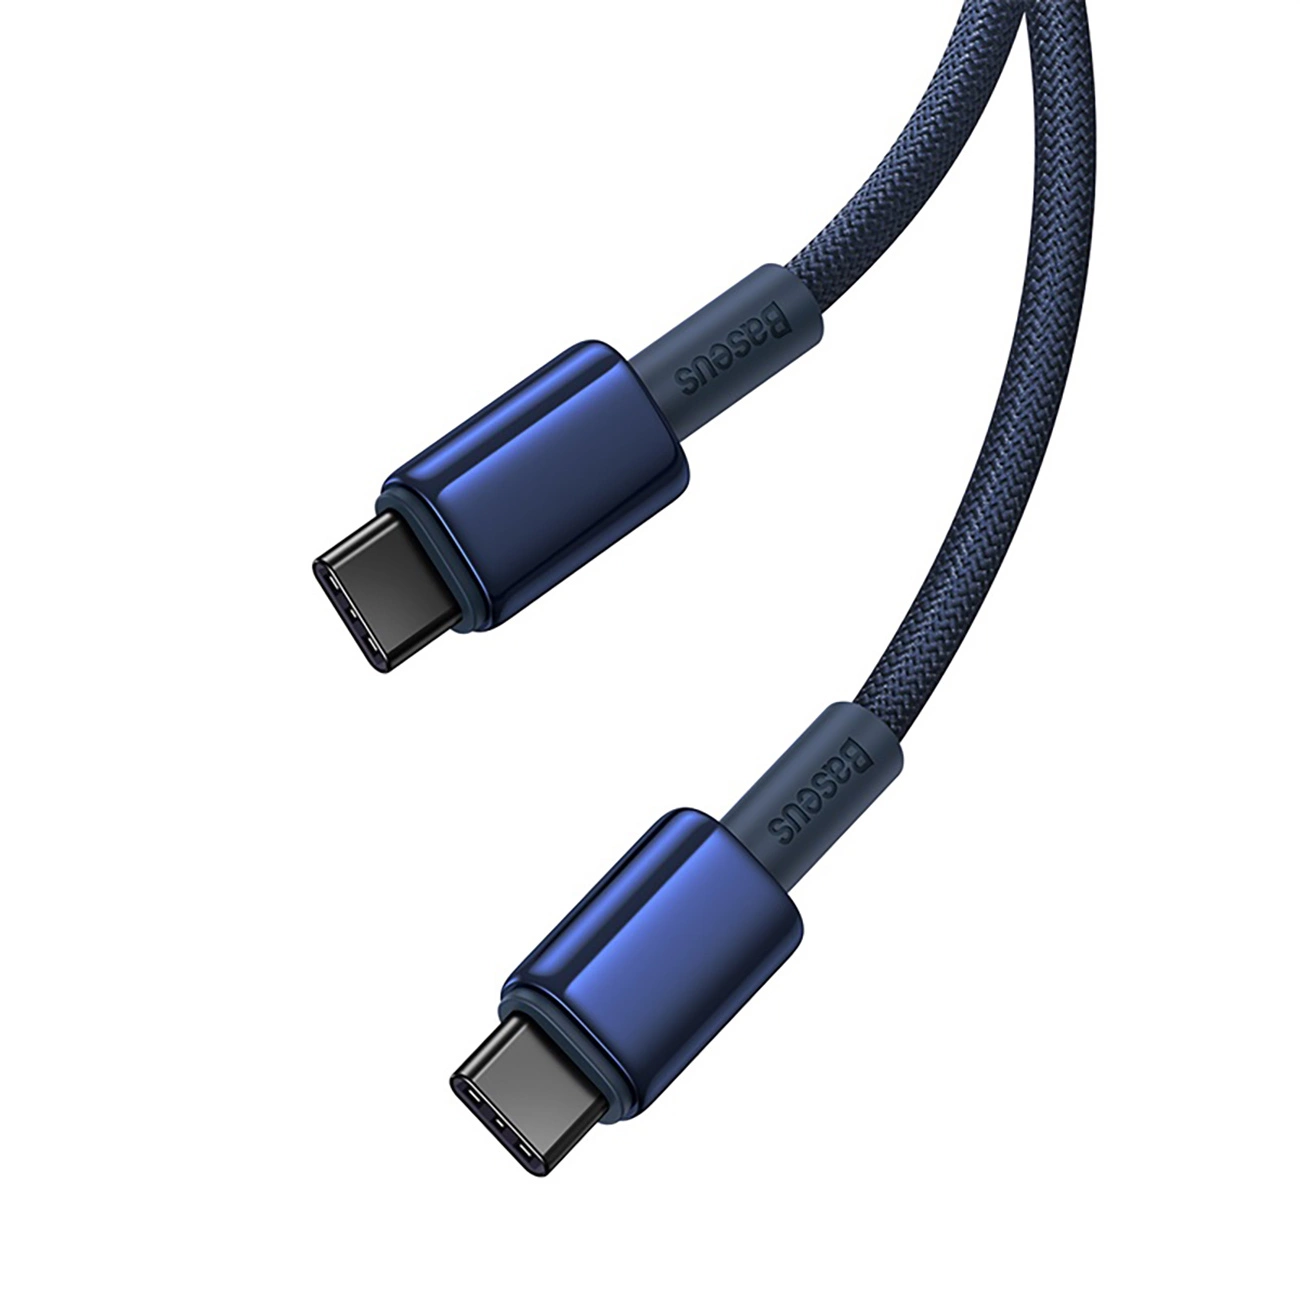 Baseus Tungsten Gold-Kabel mit USB-C/USB-C-Anschlüssen mit einer Leistung von bis zu 100 W und einer Länge von 1 m auf weißem Hintergrund